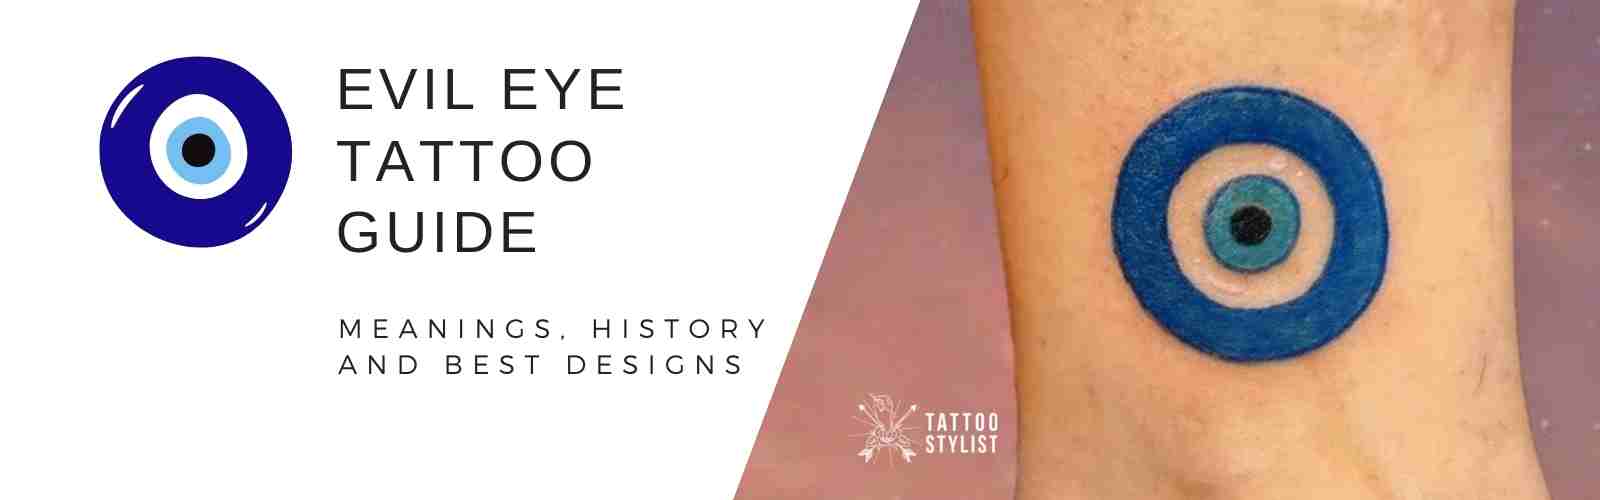 15 Tiny Evil Eye Tattoo Ideas to Ward Off Misfortune  Tatouage oeil  Tatouage Tatouage mauvais oeil grec